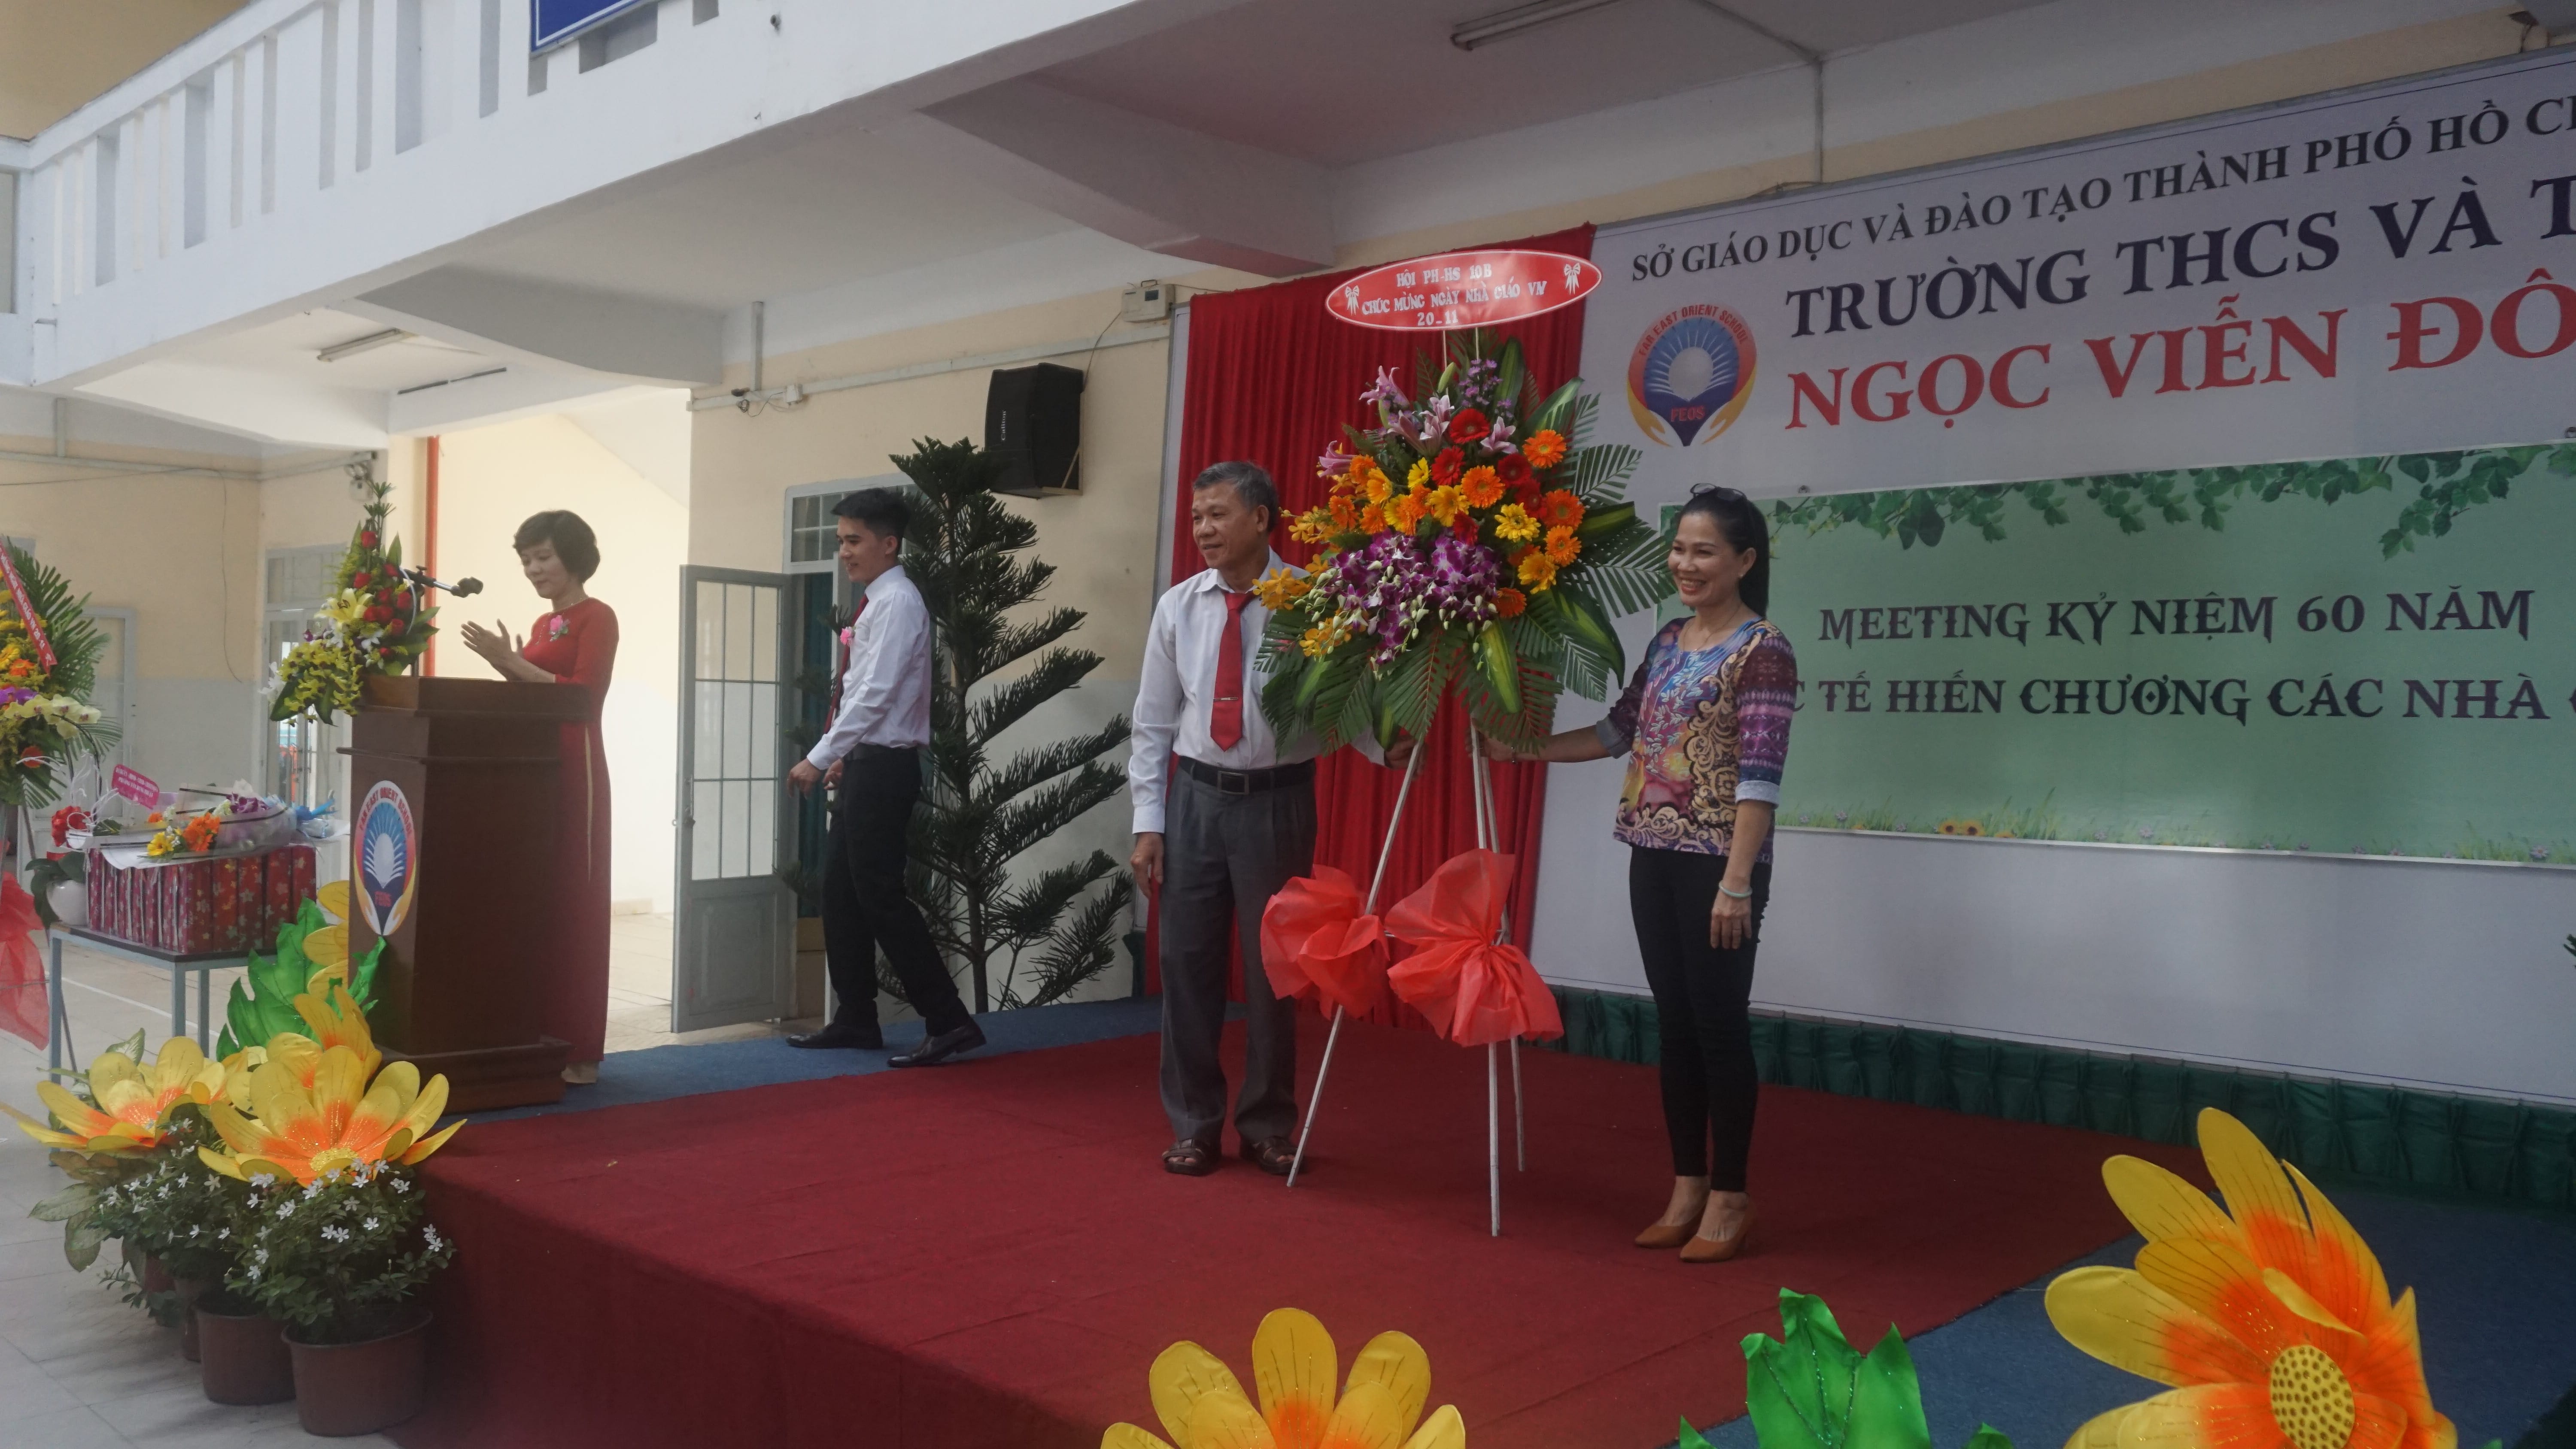 Ban đại diện hội CMHS tặng hoa nhà Trường THCS và THPT Ngọc Viễn Đông nhân ngày Nhà giáo Việt Nam 20/11